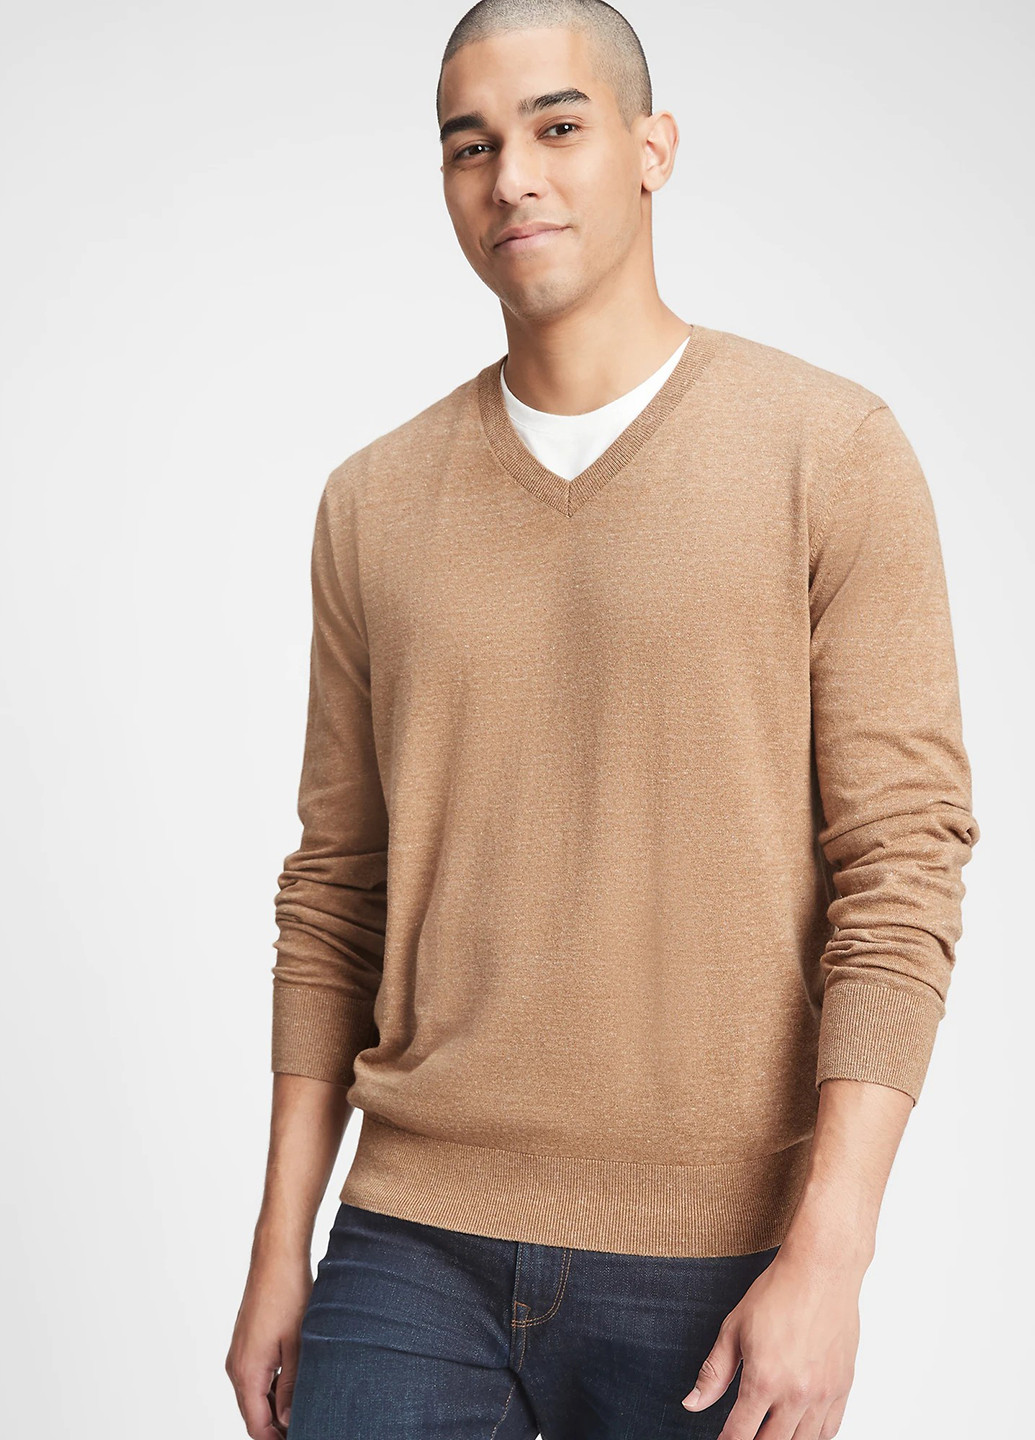 Светло-коричневый демисезонный пуловер пуловер Gap